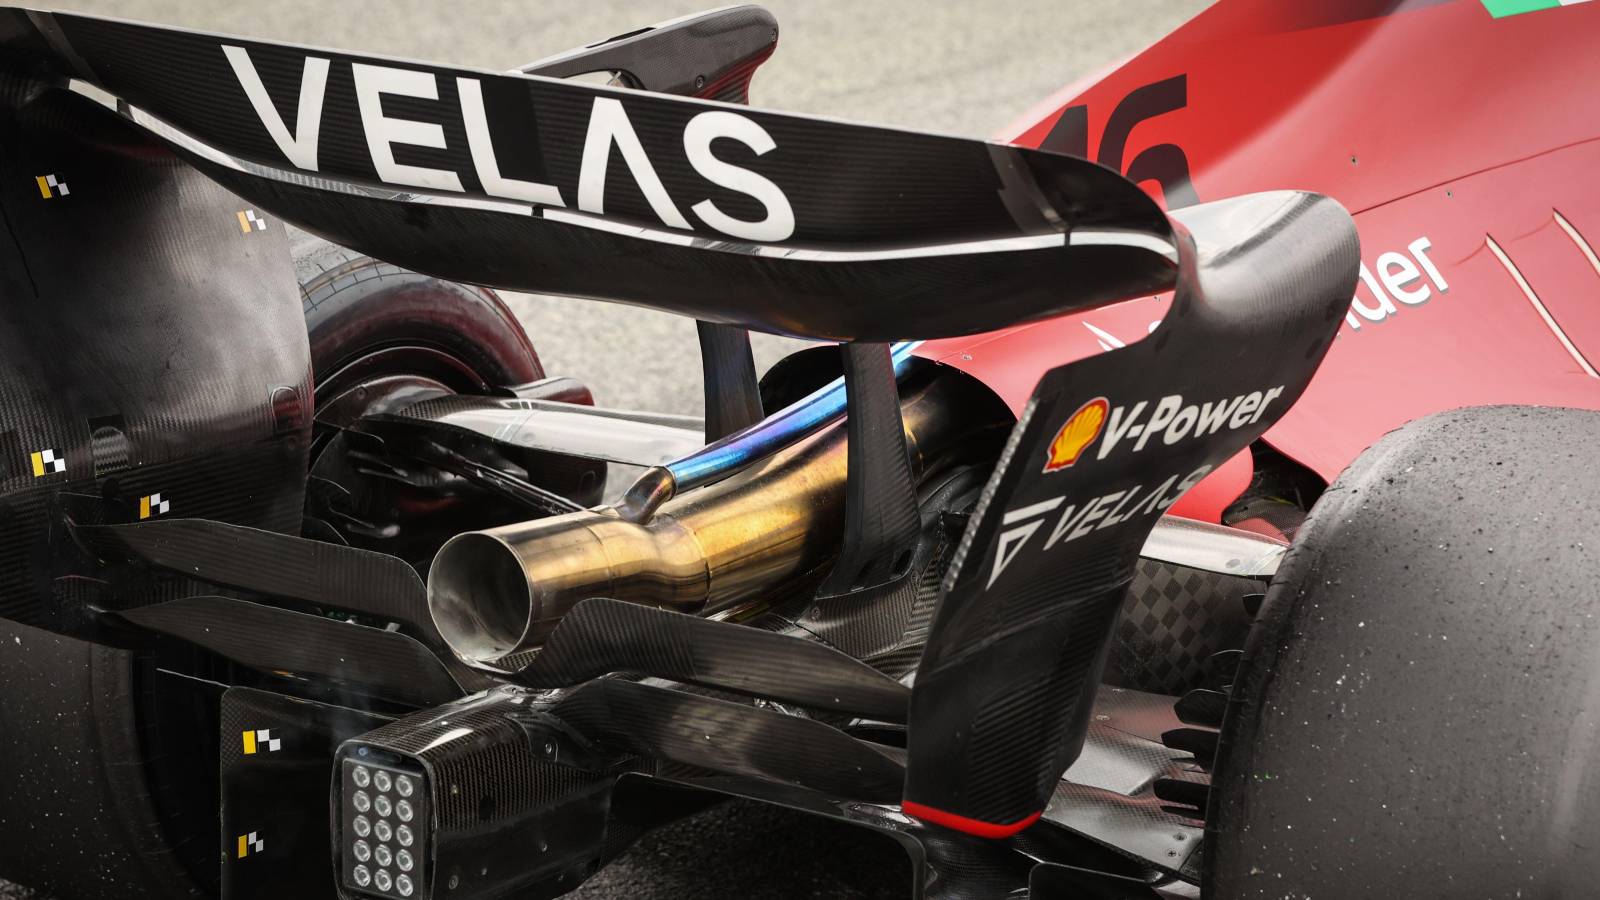 F1 - La post combustione della power unit Ferrari allerta la FIA | Formula  Uno Analisi Tecnica